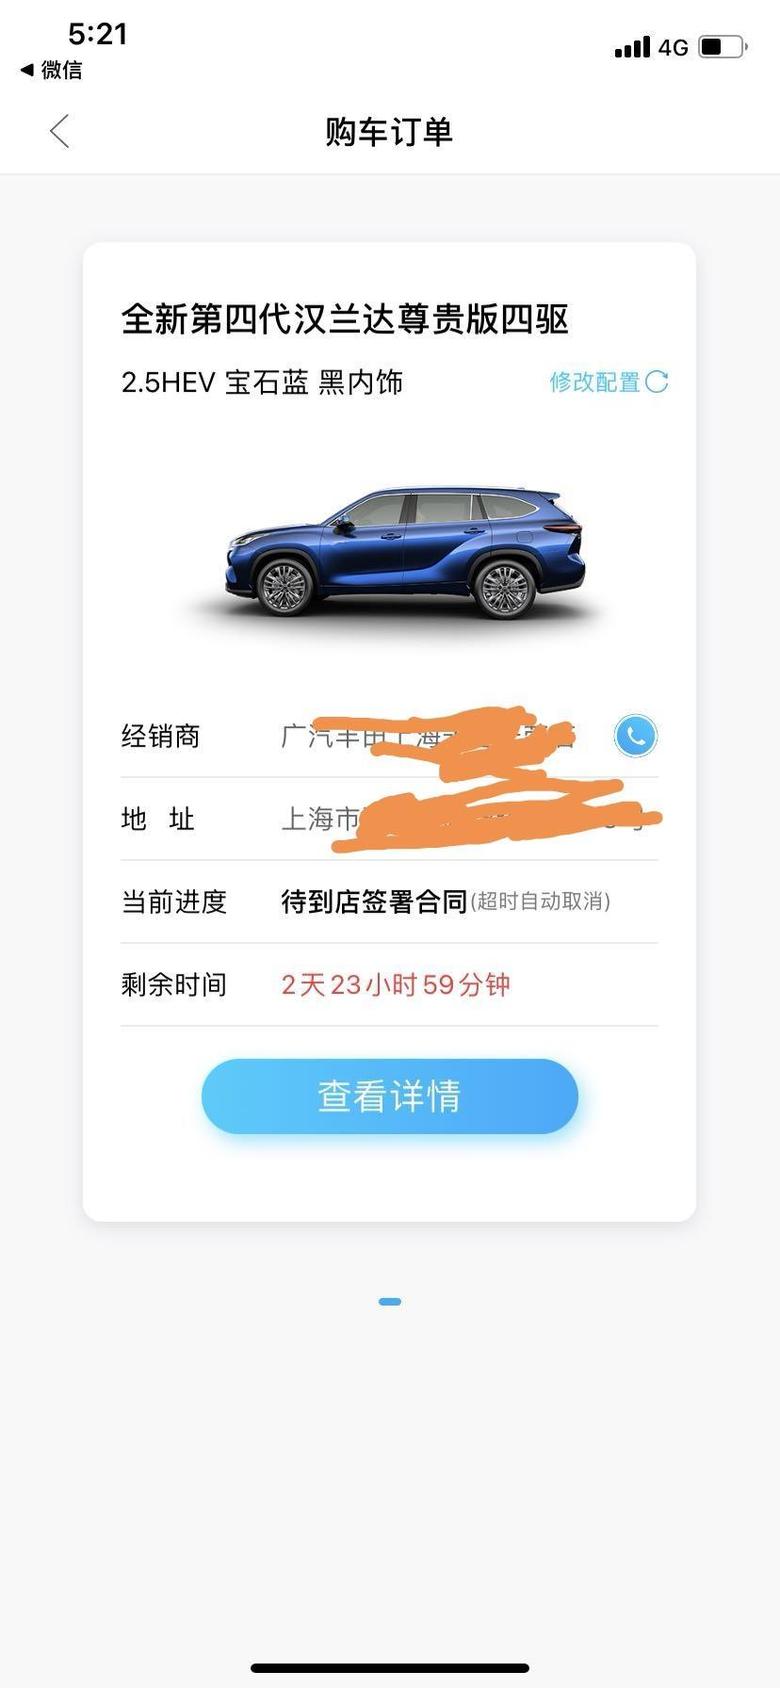 汉兰达 ?等车日记8月15日定了四驱尊贵版蓝色，上海，没有加价，也没有服务费，裸车32.98万，目前排产进度要12月底提车，其他朋友有更早的嘛？